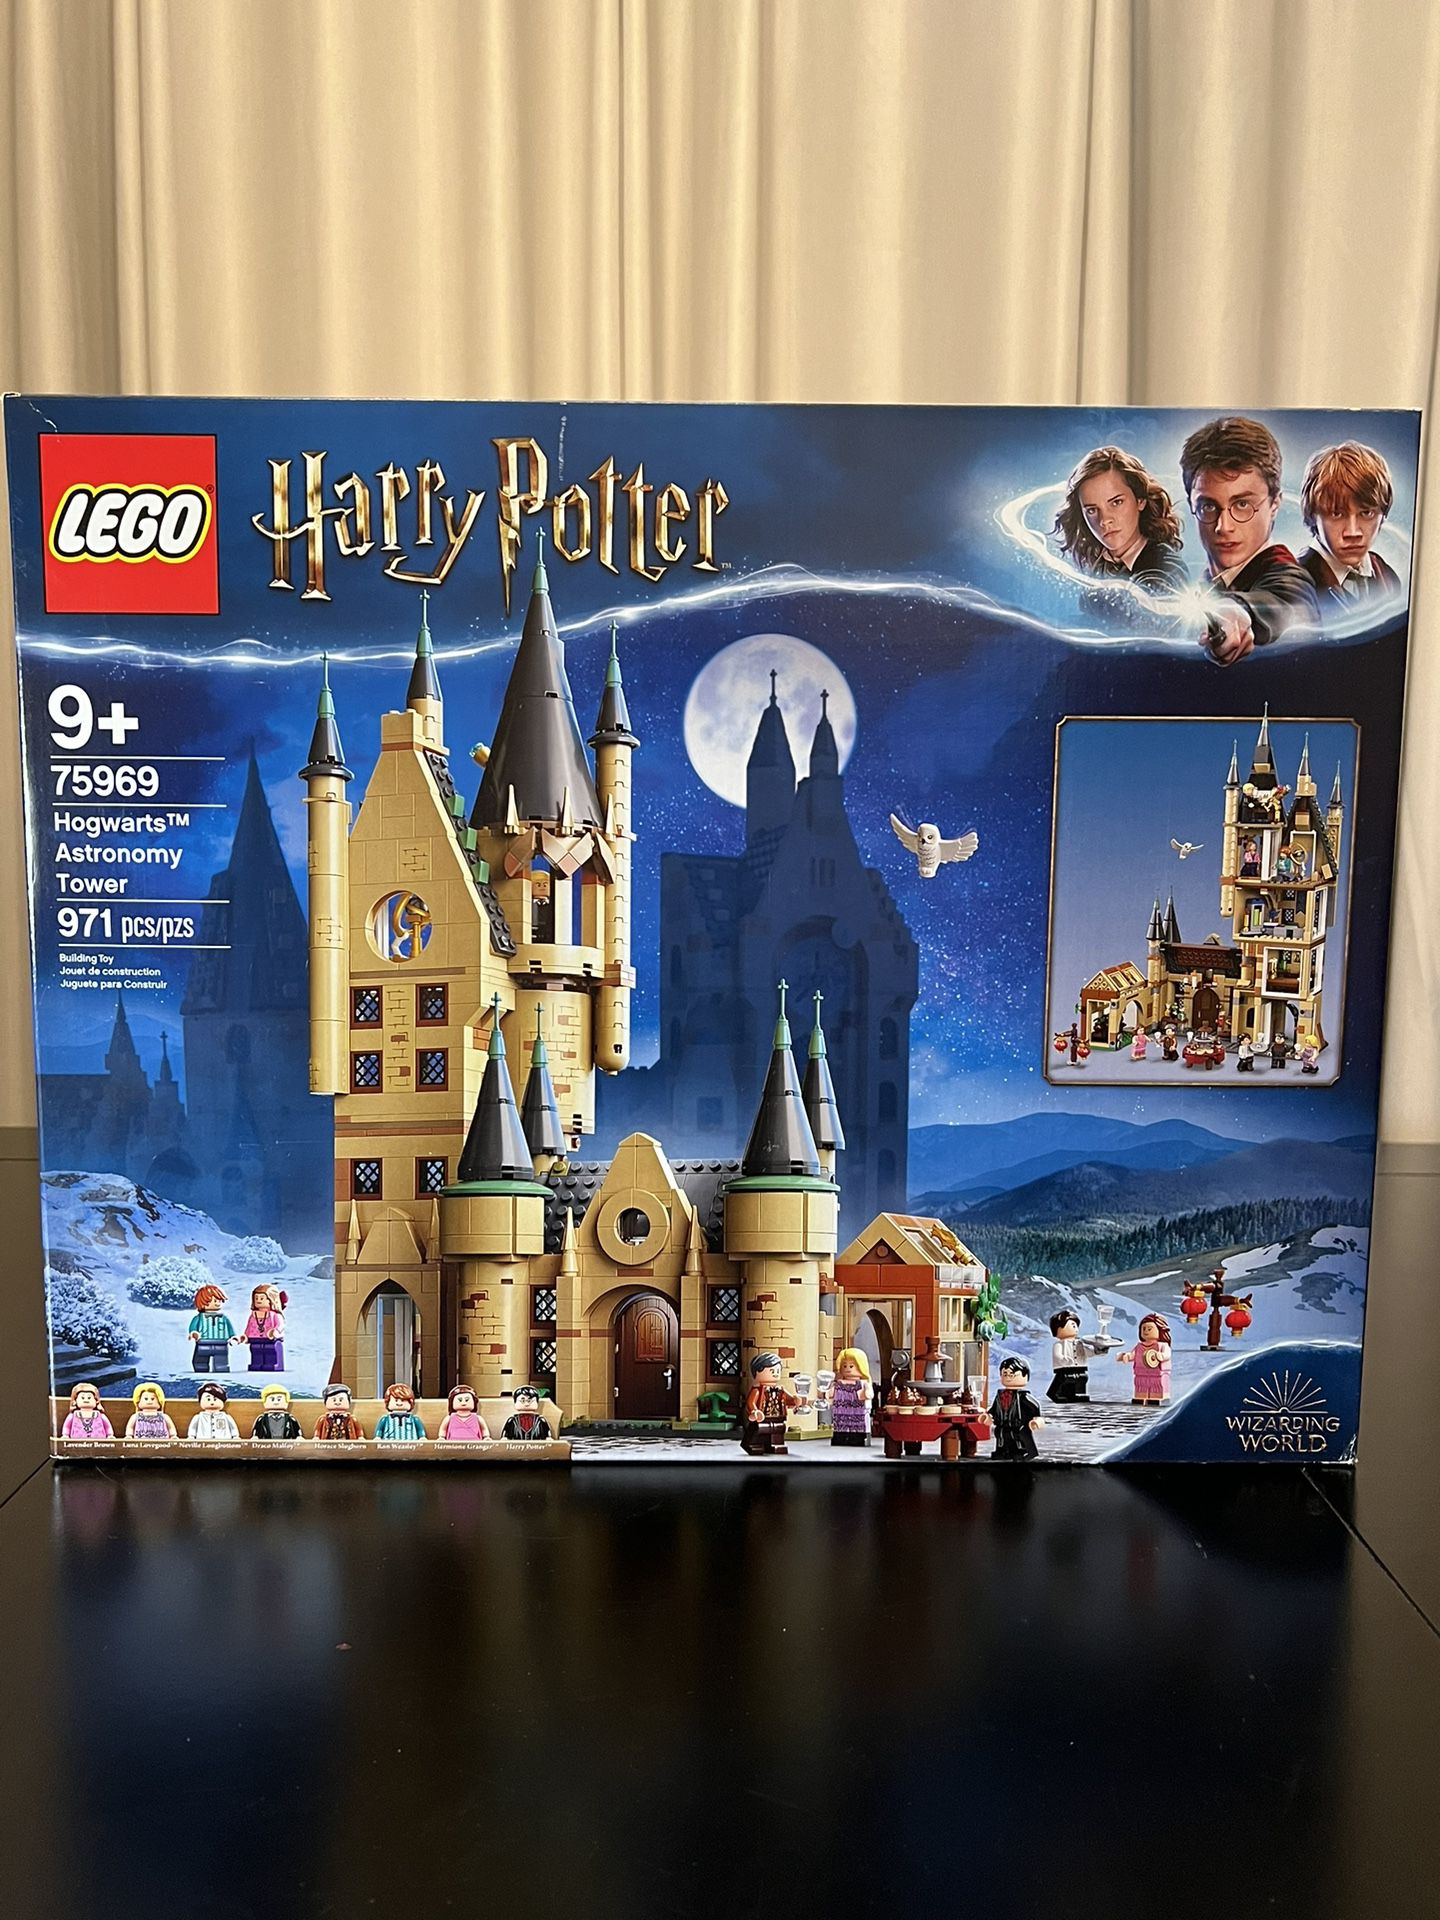 LEGO Harry Potter: Hogwarts Astronomy Tower (75969) - New Sealed Box